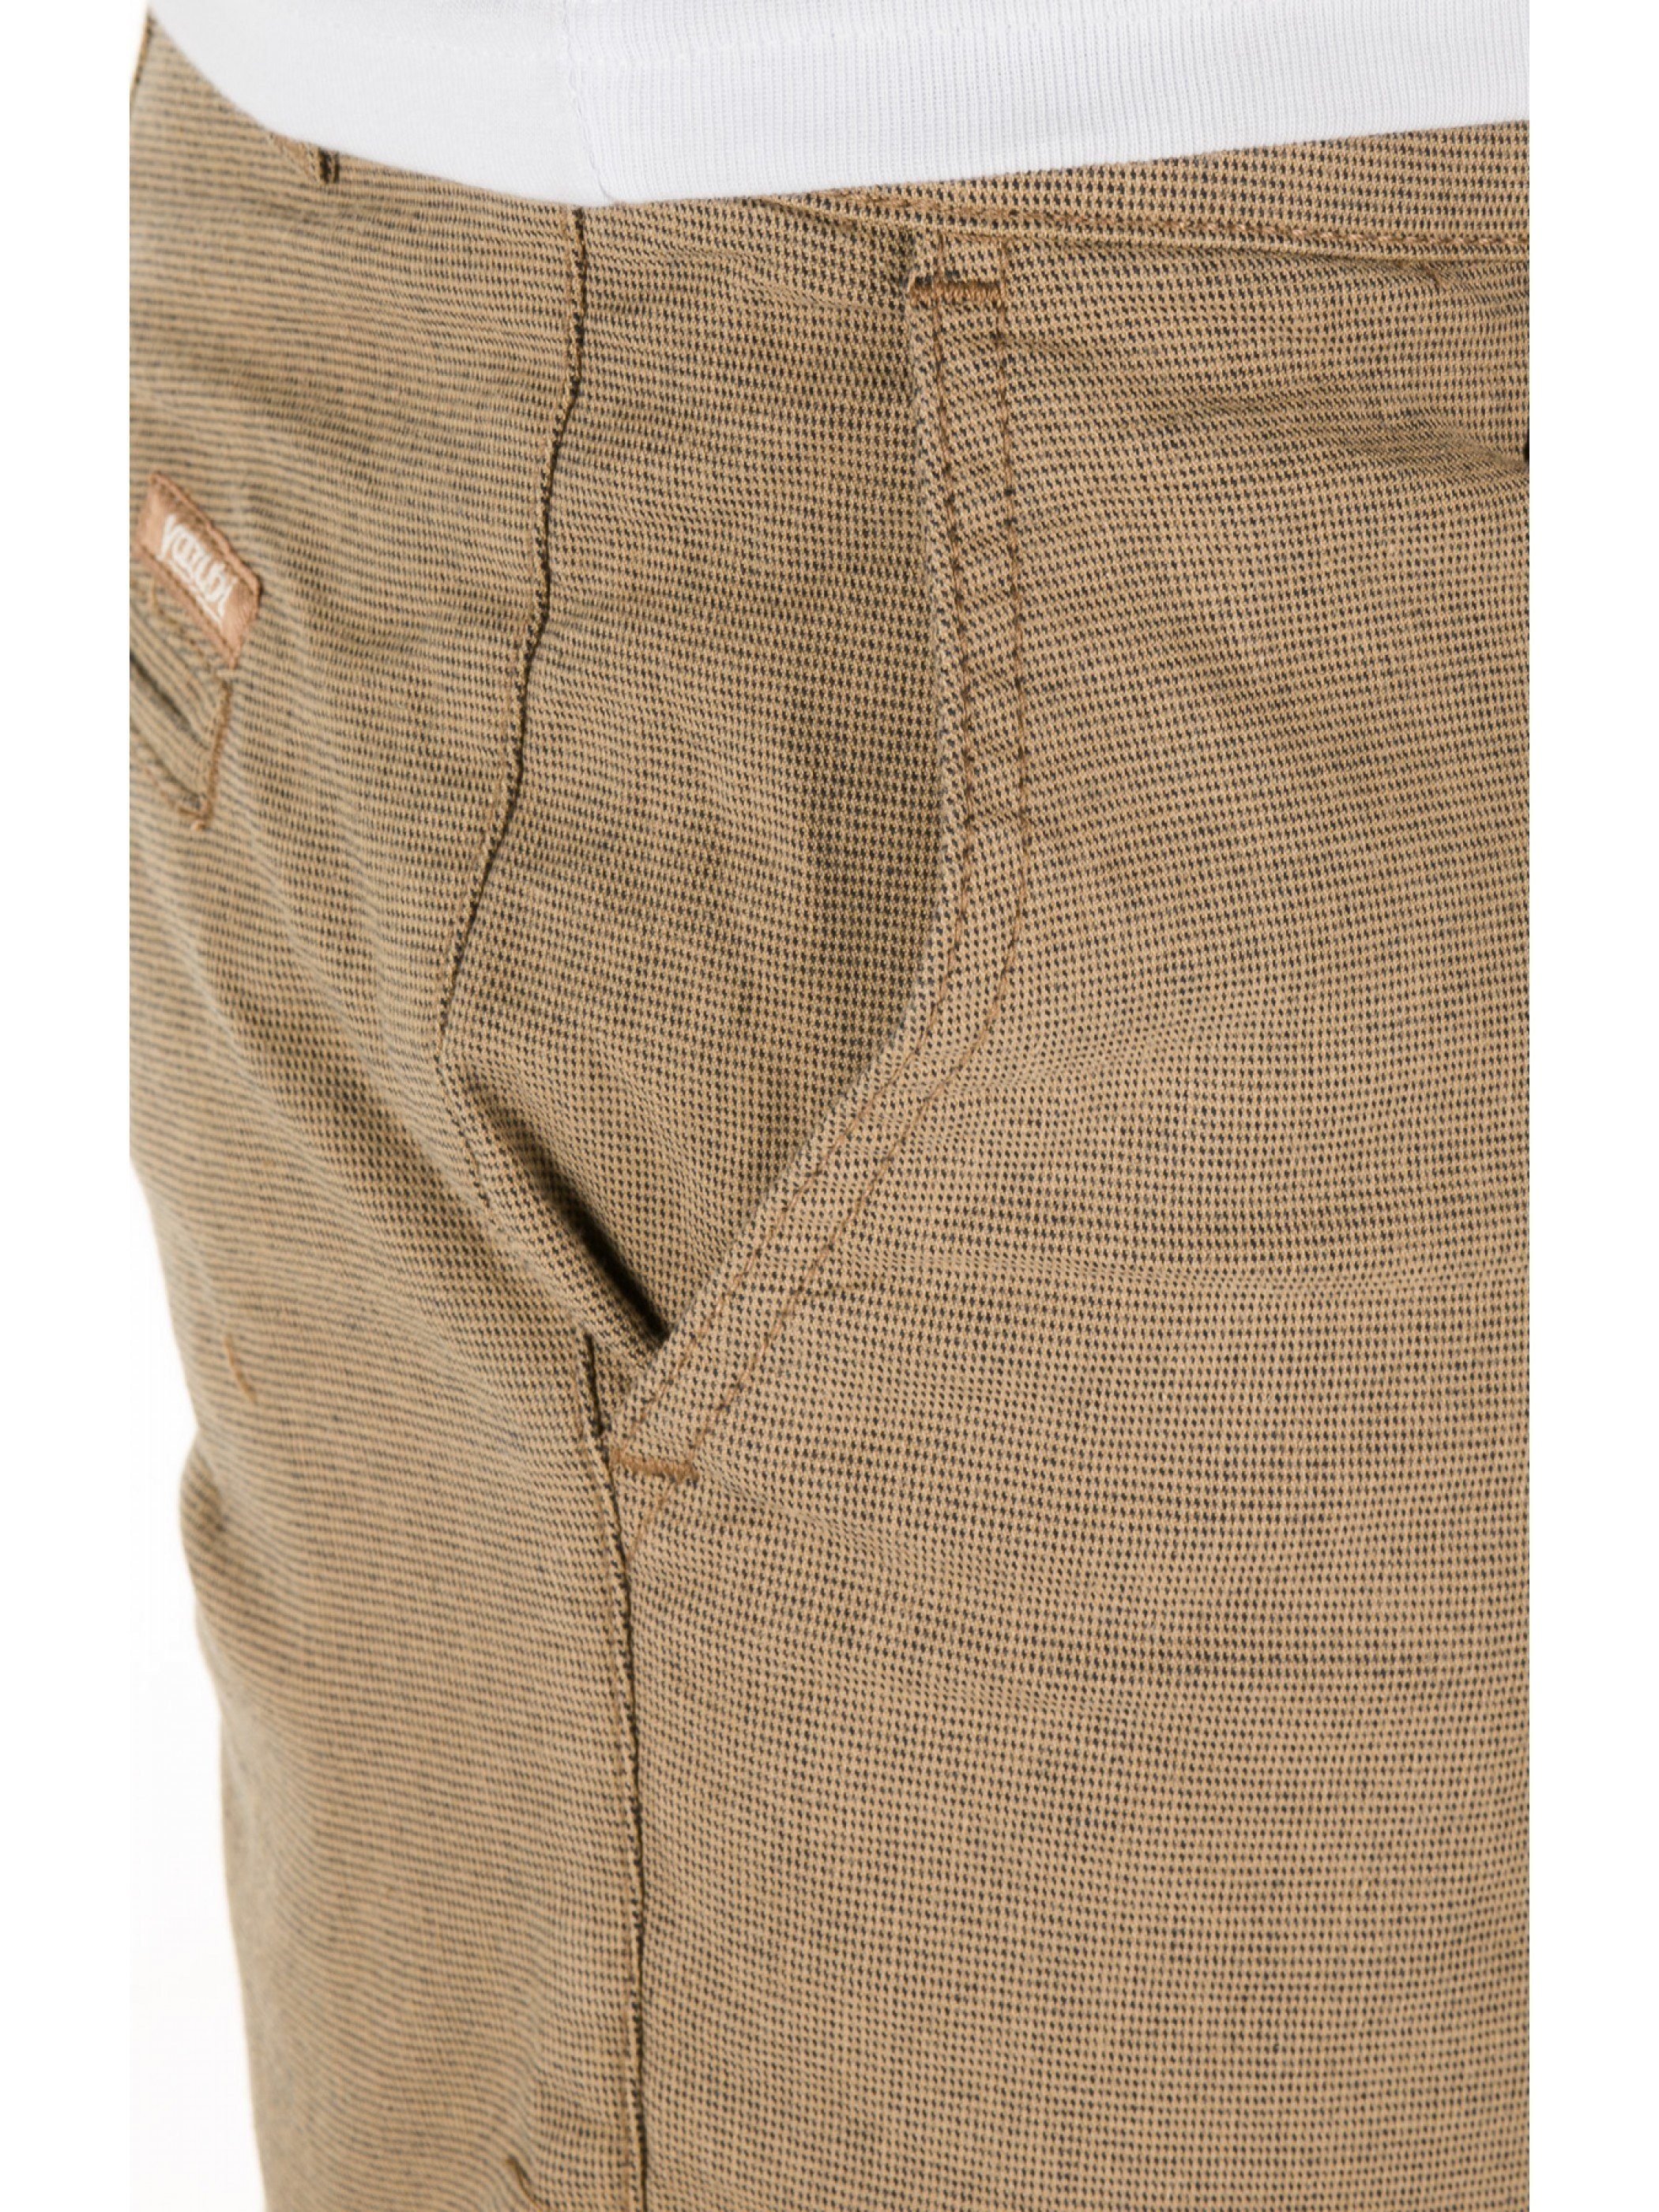 Aiden Shorts Yazubi 171311) (desert Braun taupe Chino Shorts